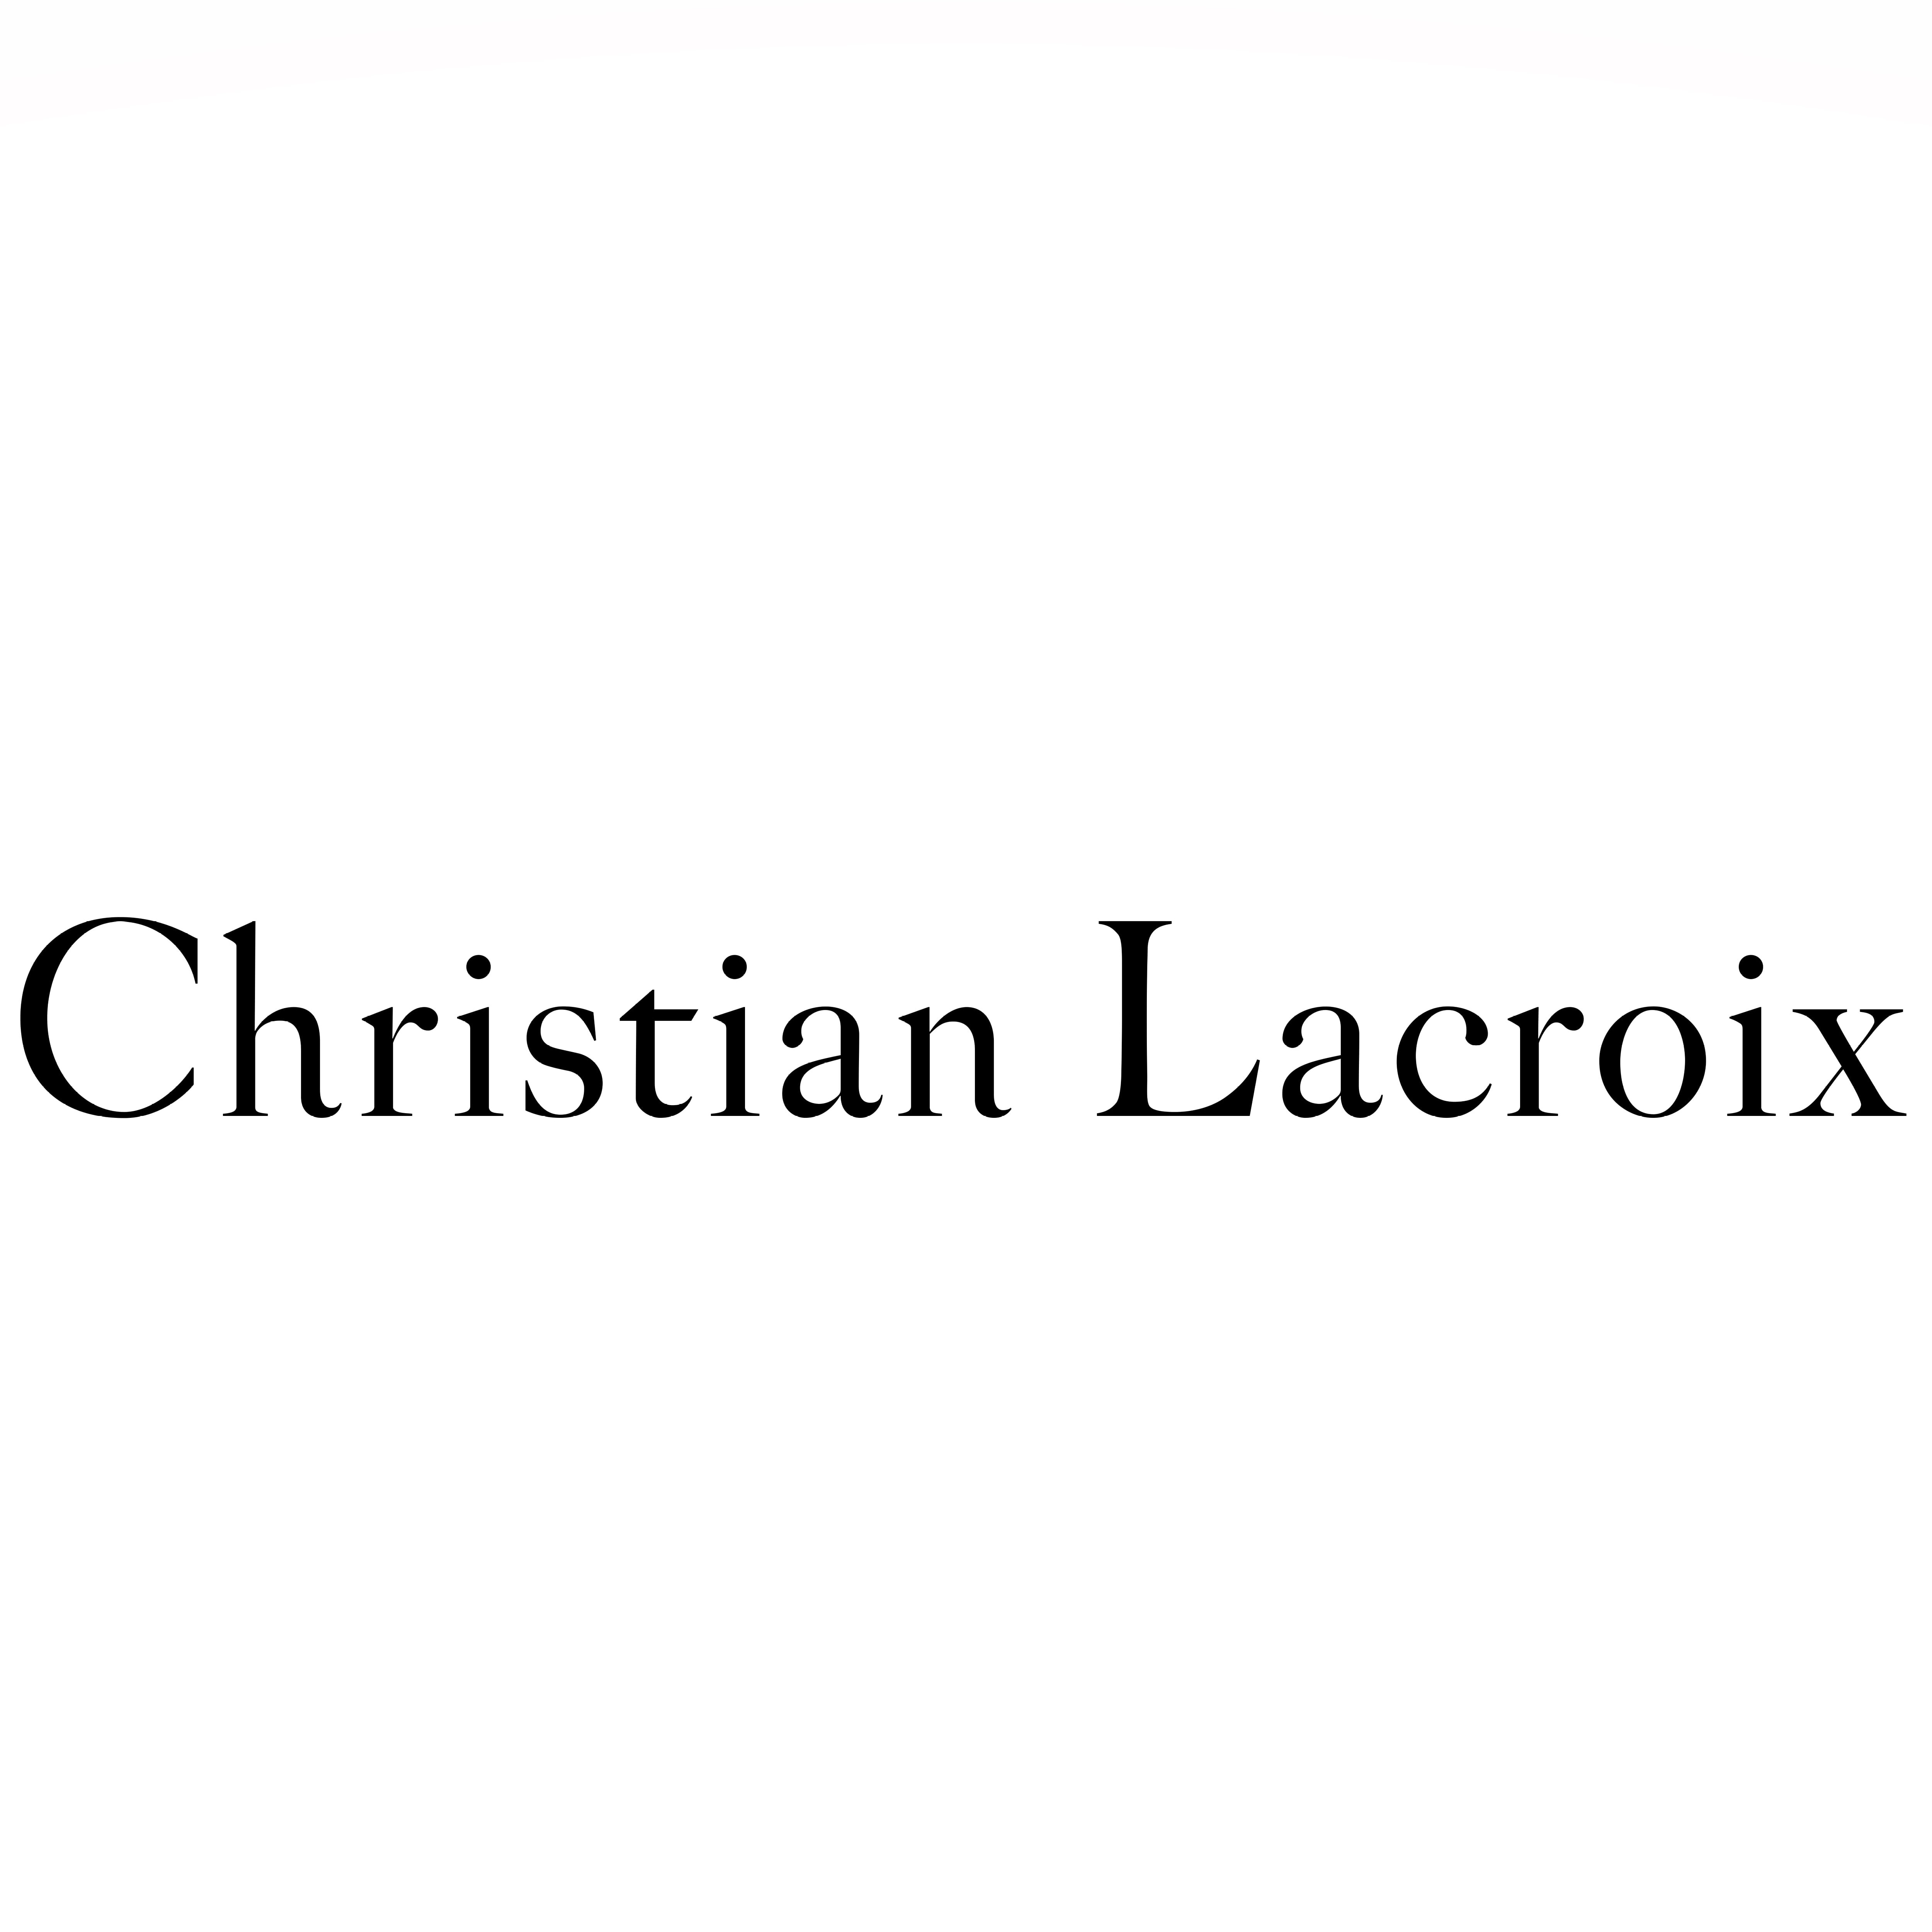 Логотип бренда Christian Lacroix